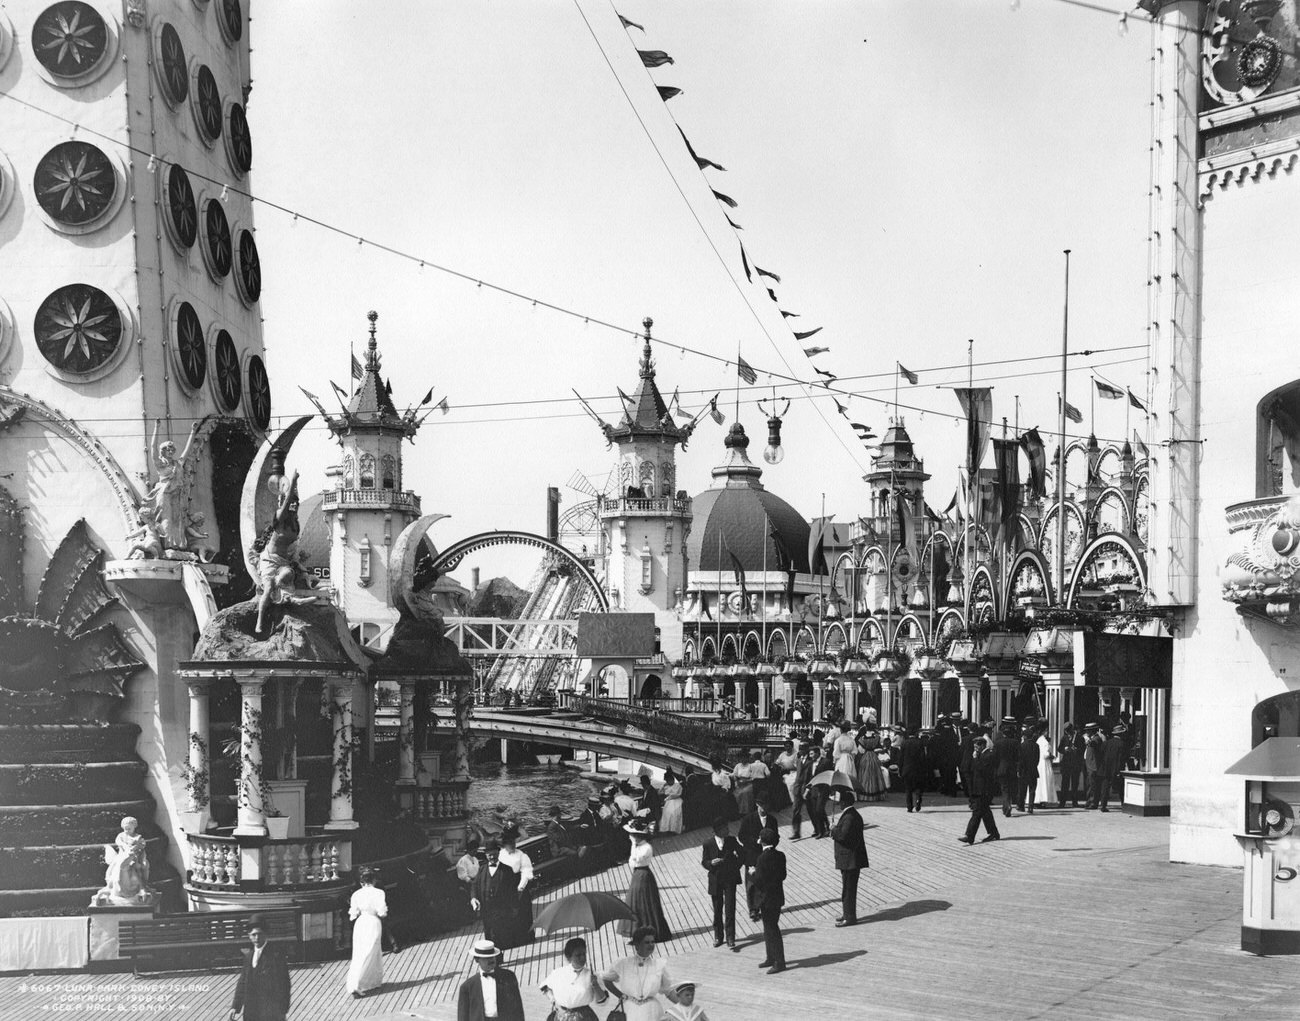 Luna Park At Coney Island, Brooklyn, 1908